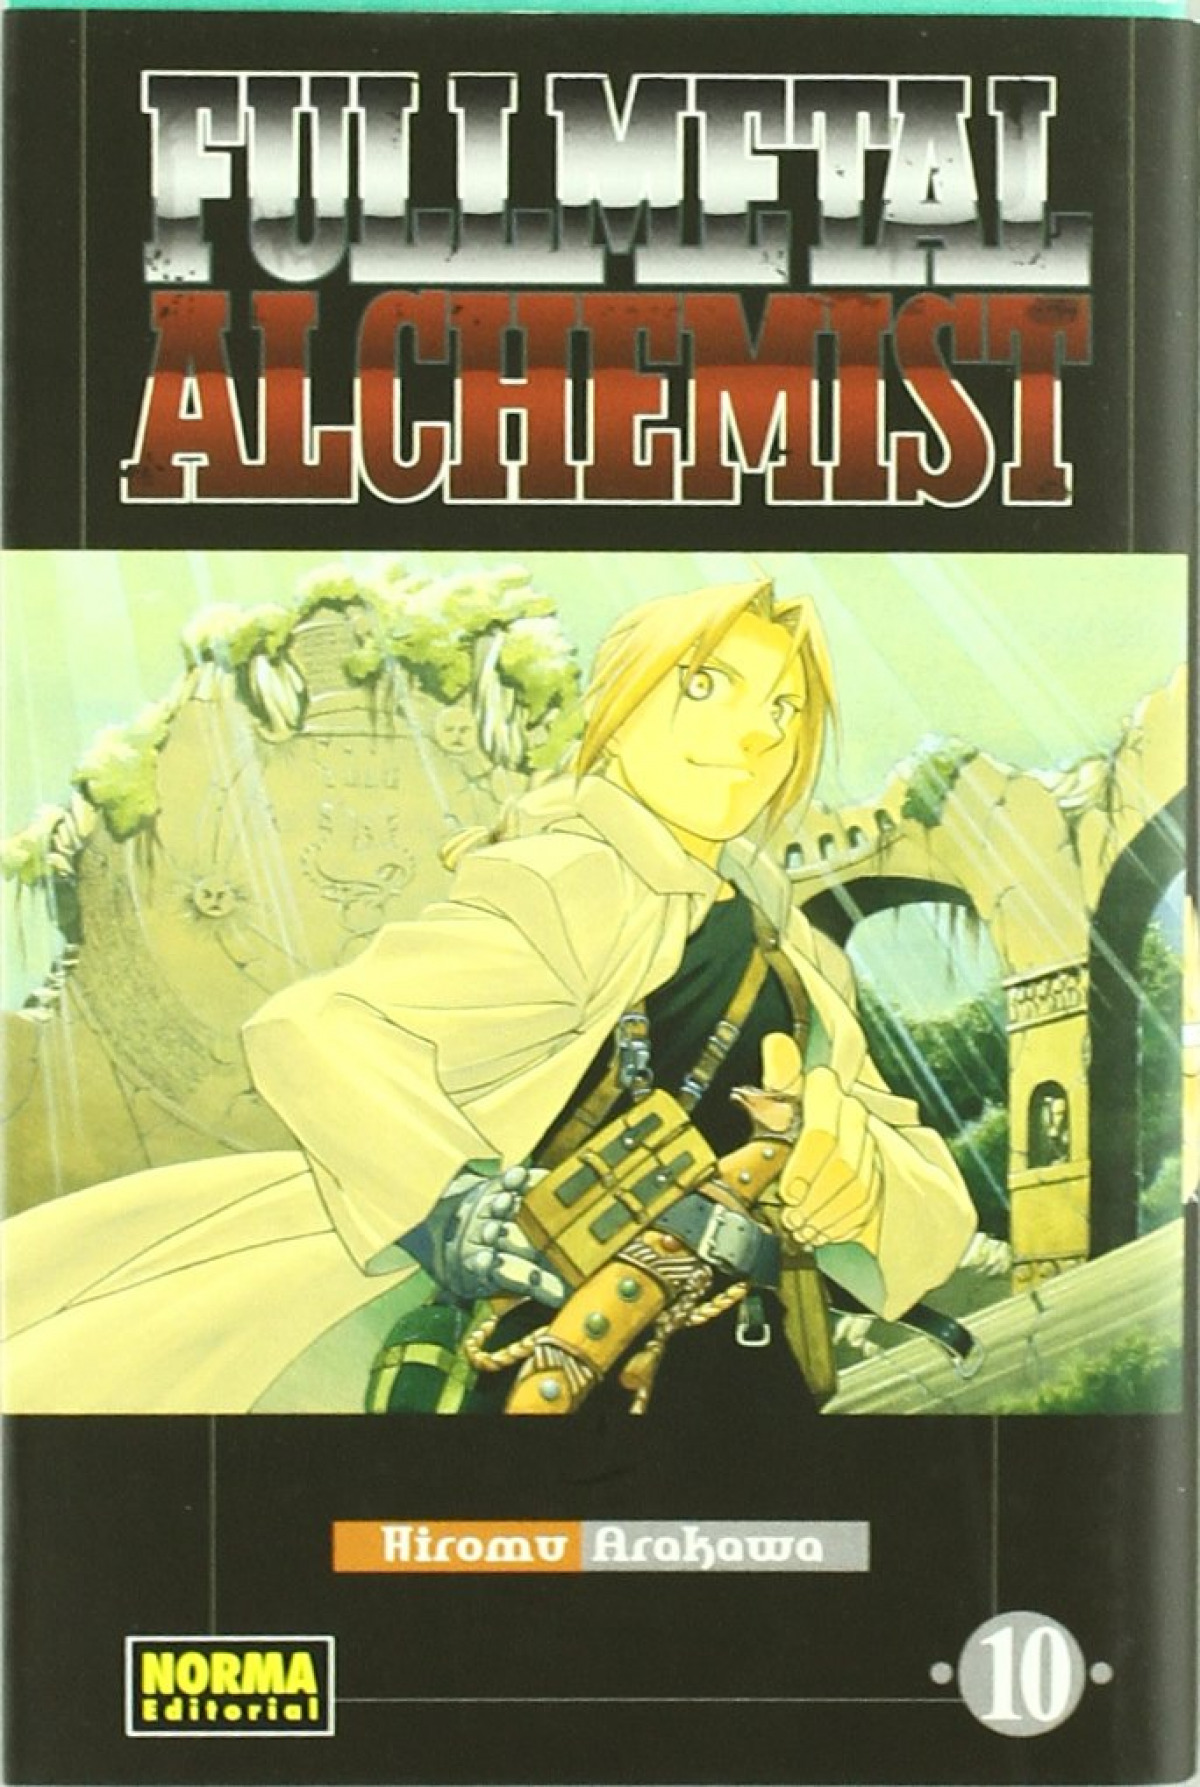 Fullmetal alchemist 10 - Arakawa, Hiromu